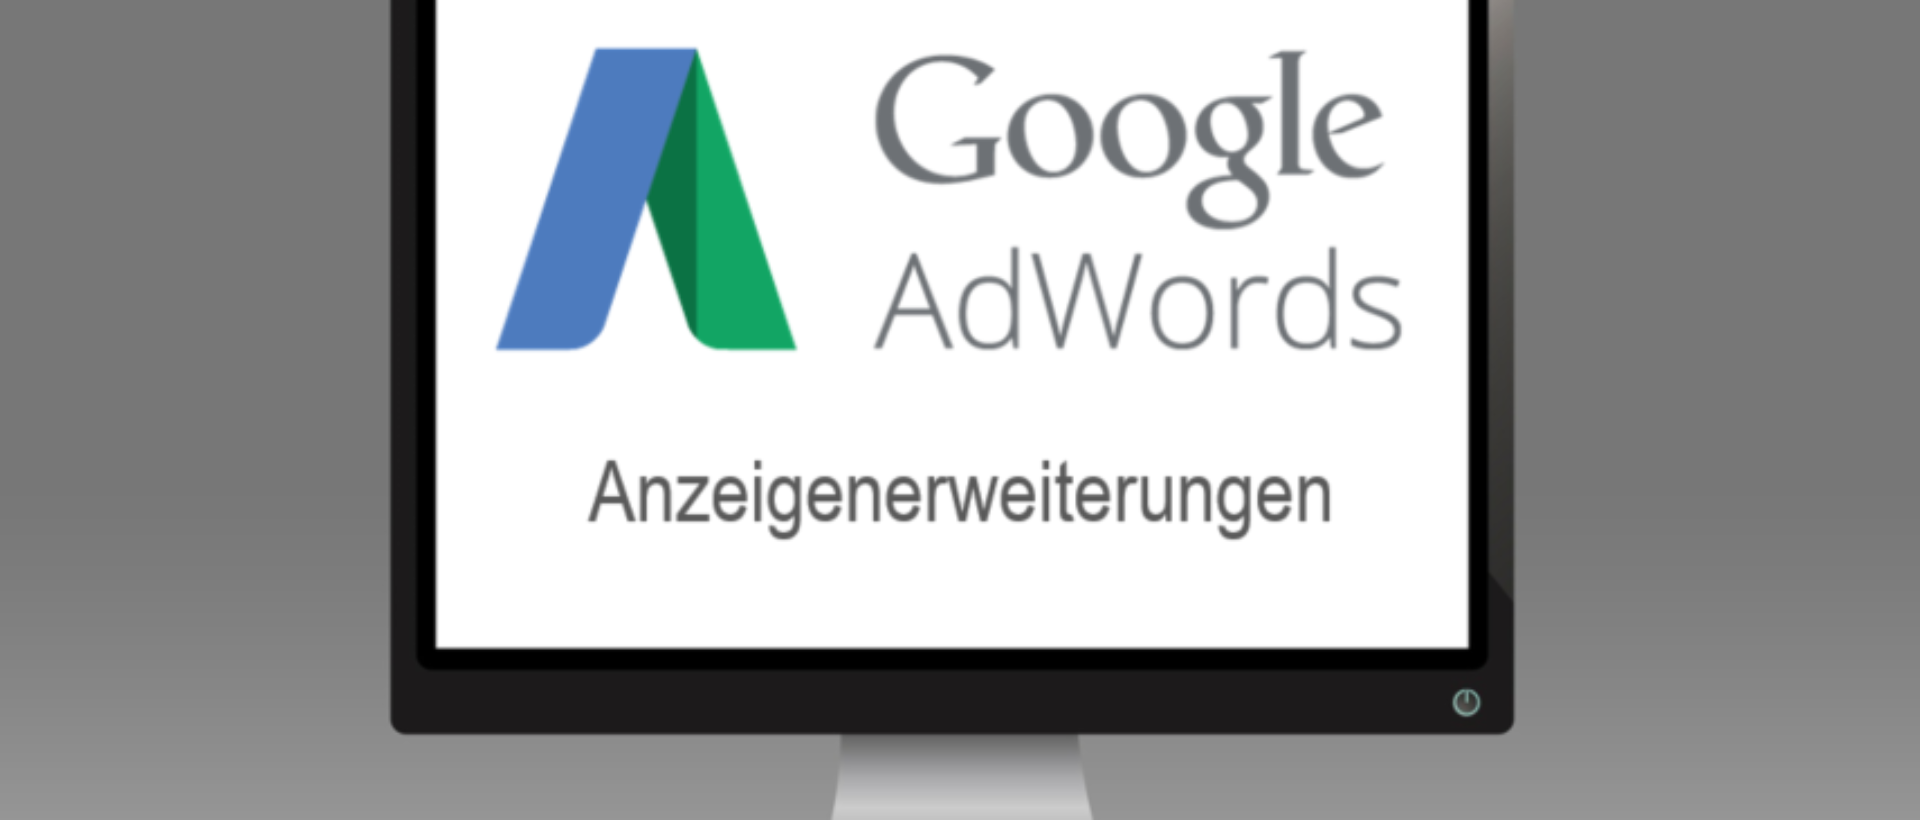 Google AdWords Anzeigenerweiterungen